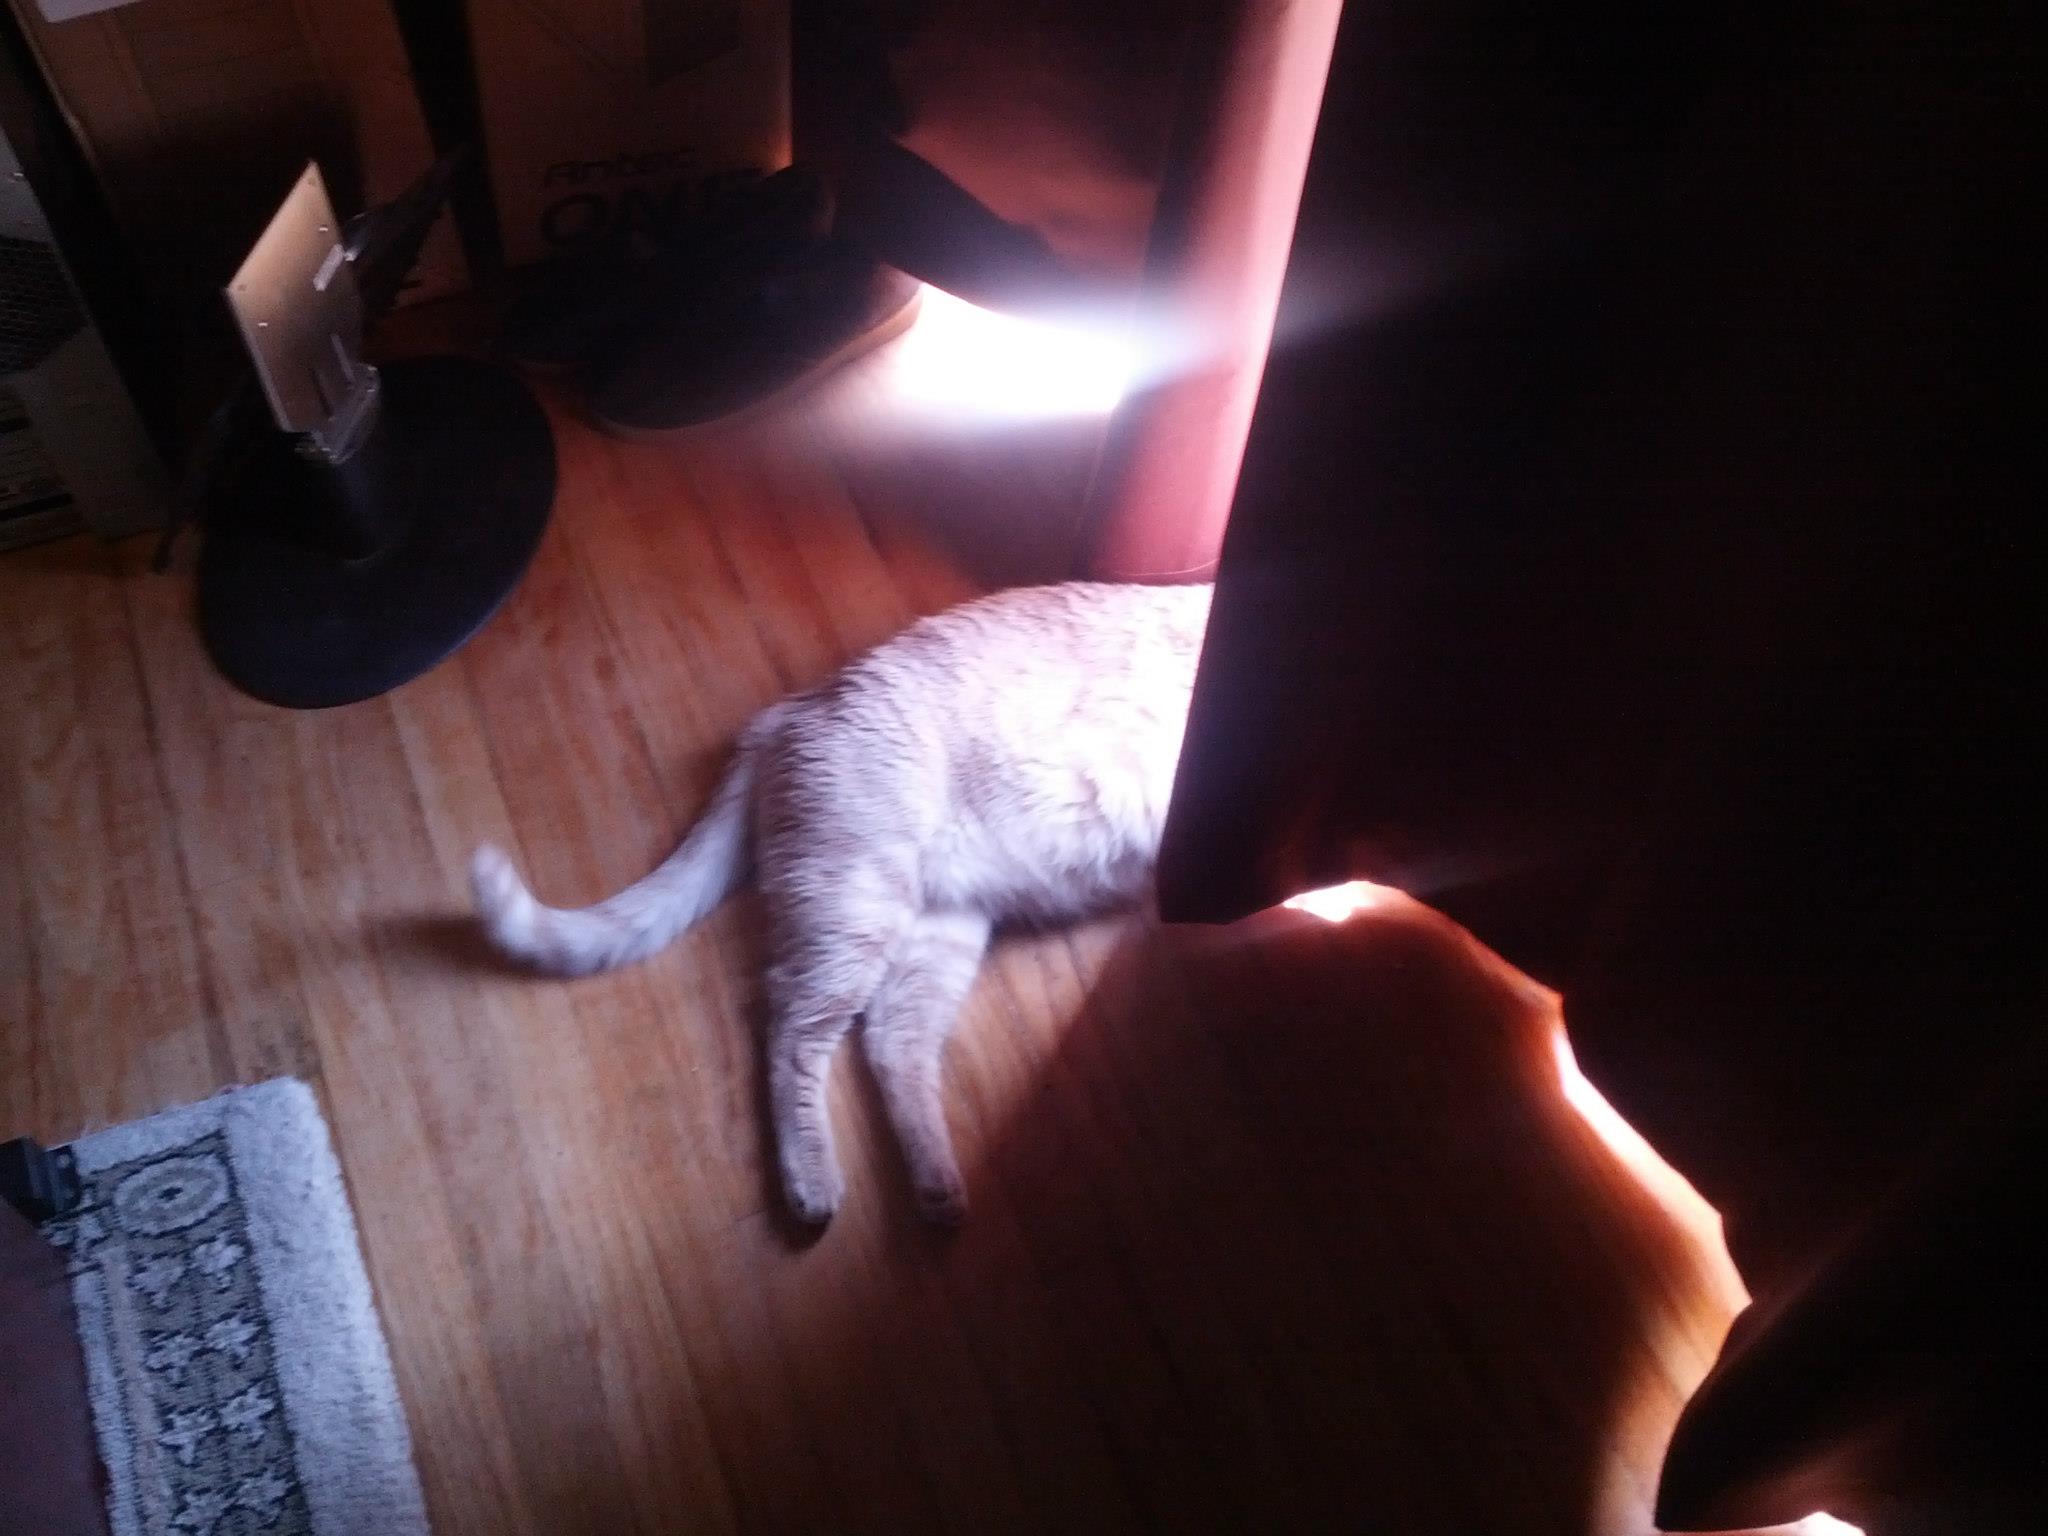 Ocelot absorbing sunlight